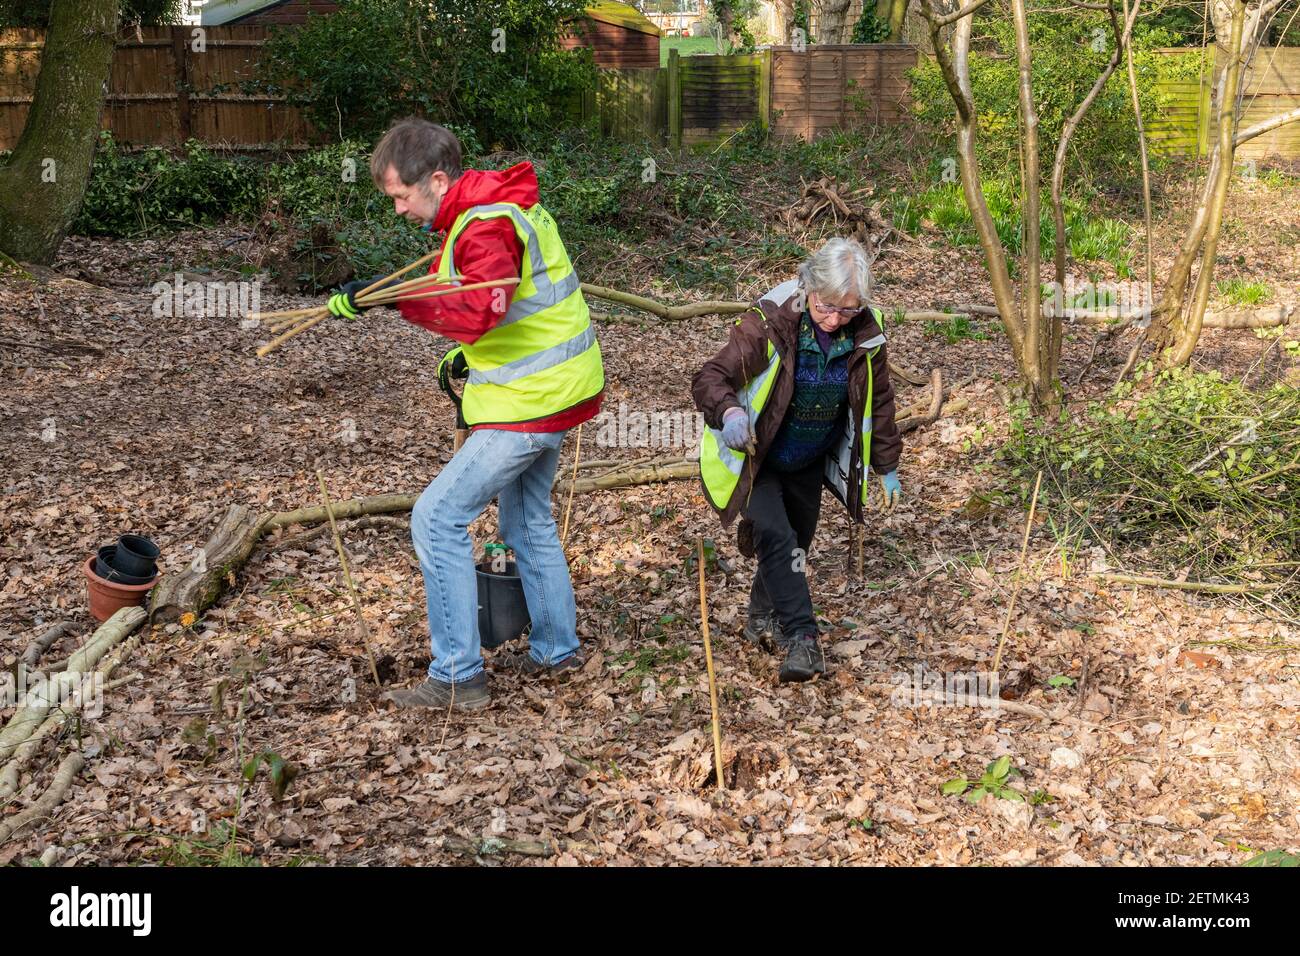 Voluntarios plantando árboles en un área de bosque cerca de casas, Surrey, Inglaterra, Reino Unido Foto de stock